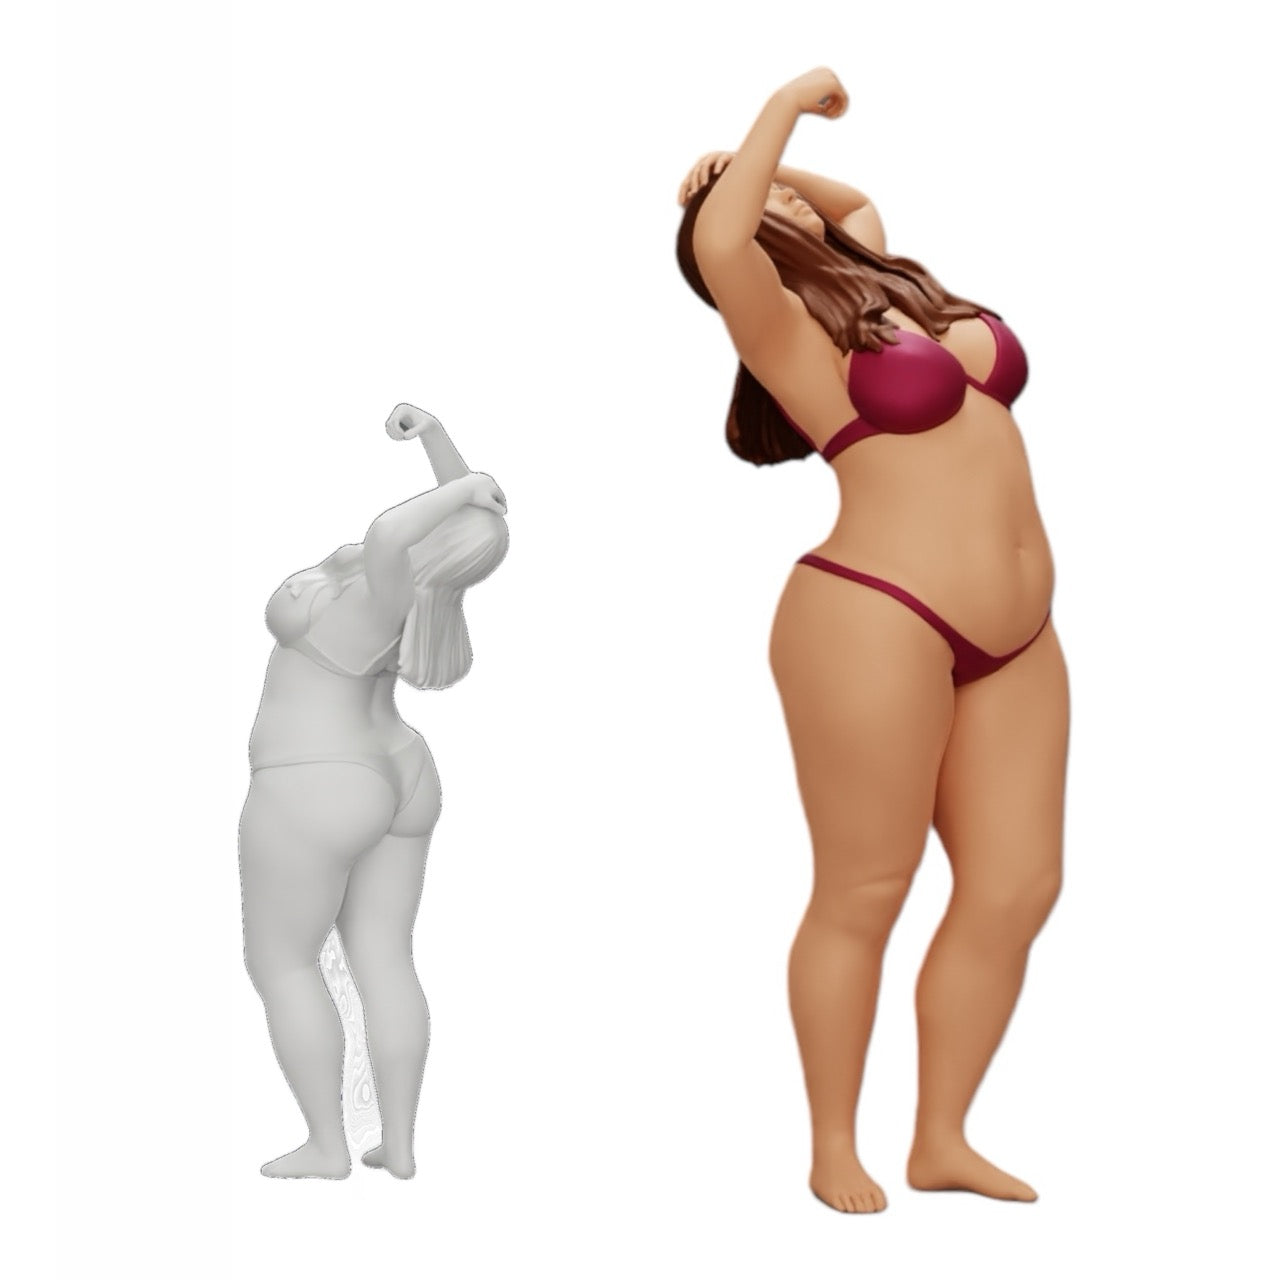 Diorama Modellbau Produktfoto 0: Mädchen im Bikini unter der Dusche (Ref Nr. A8)